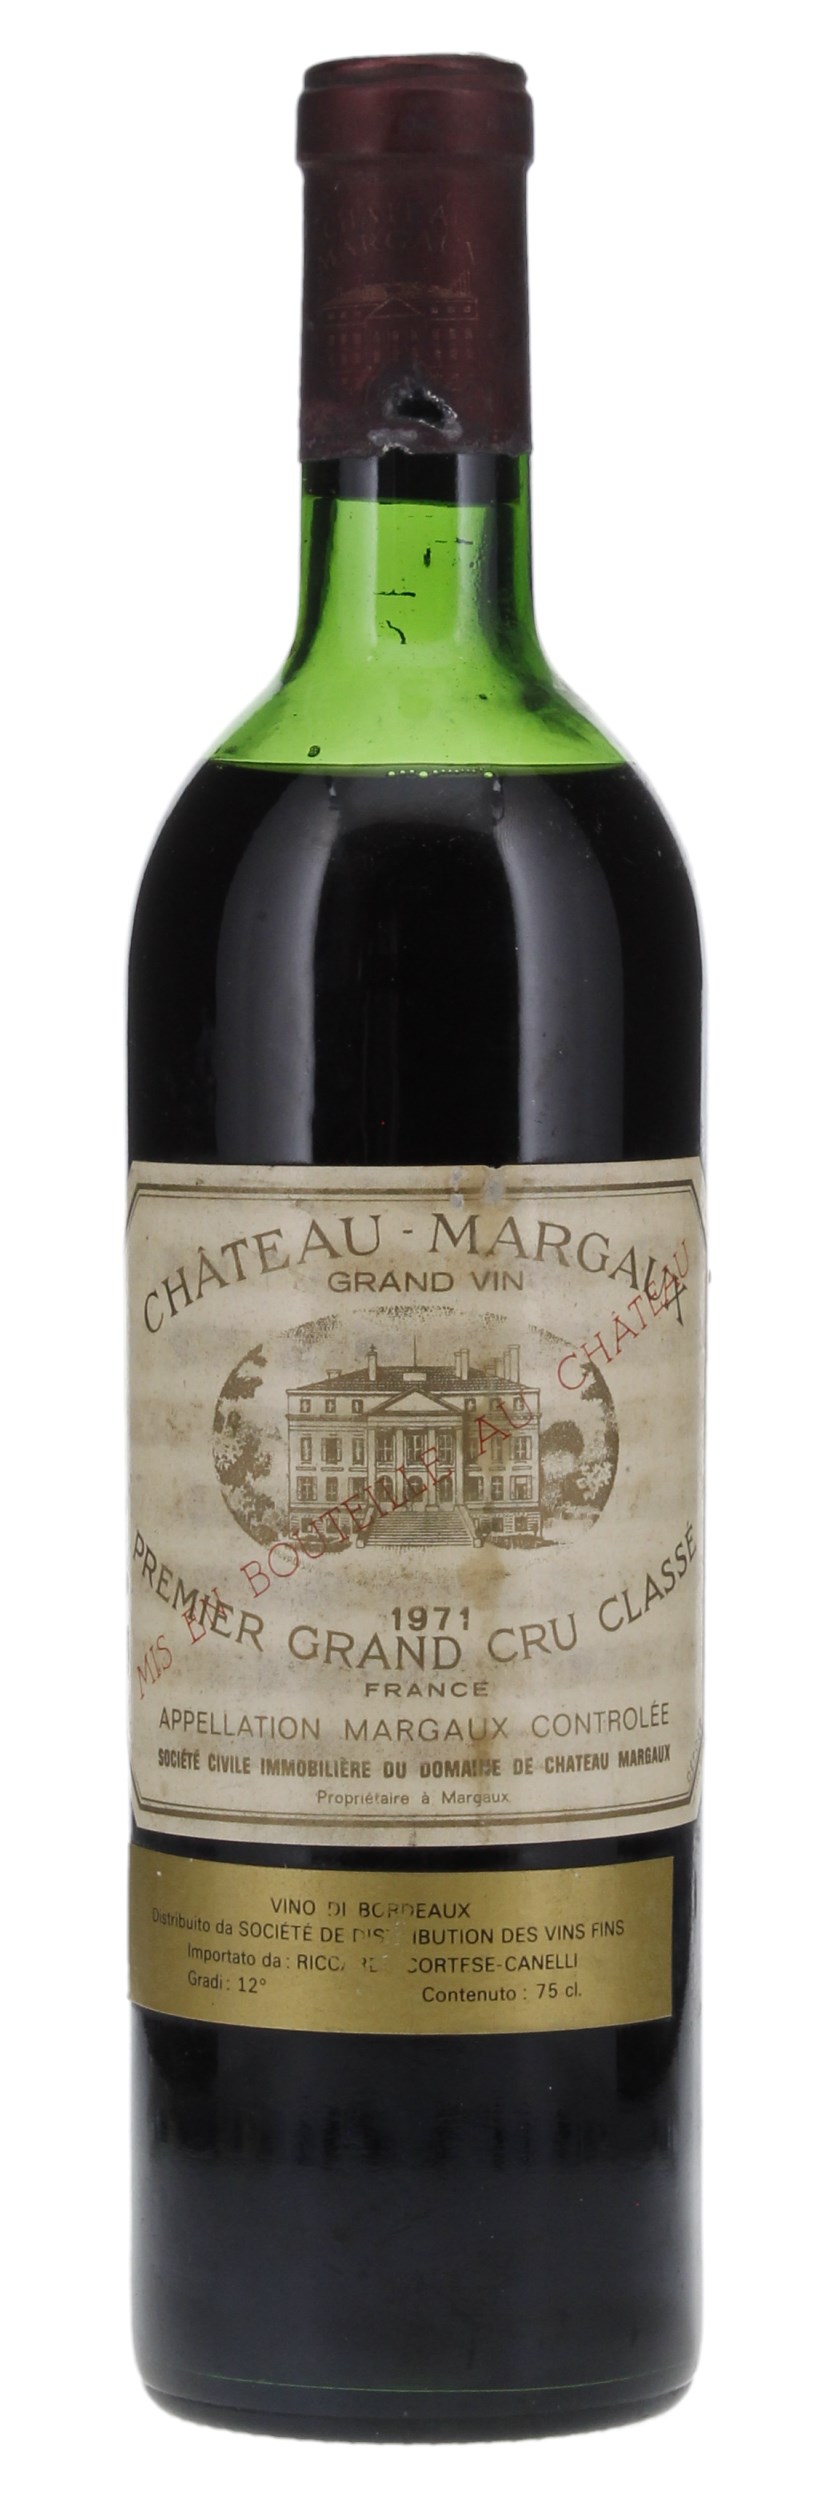 1971 Château Margaux, 750ml